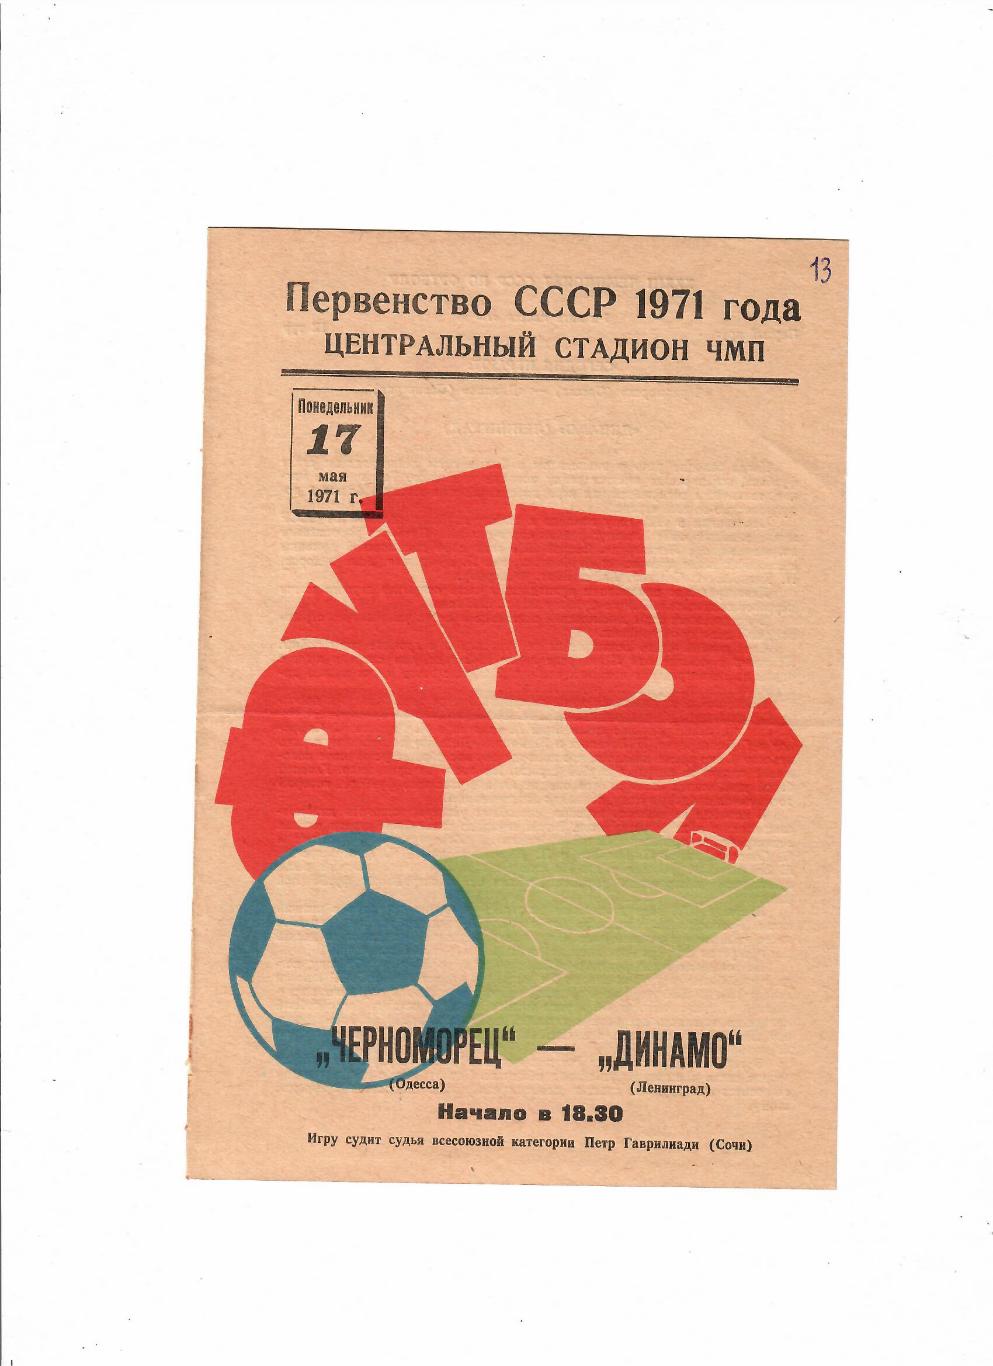 Черноморец Одесса-Динамо Ленинград 1971